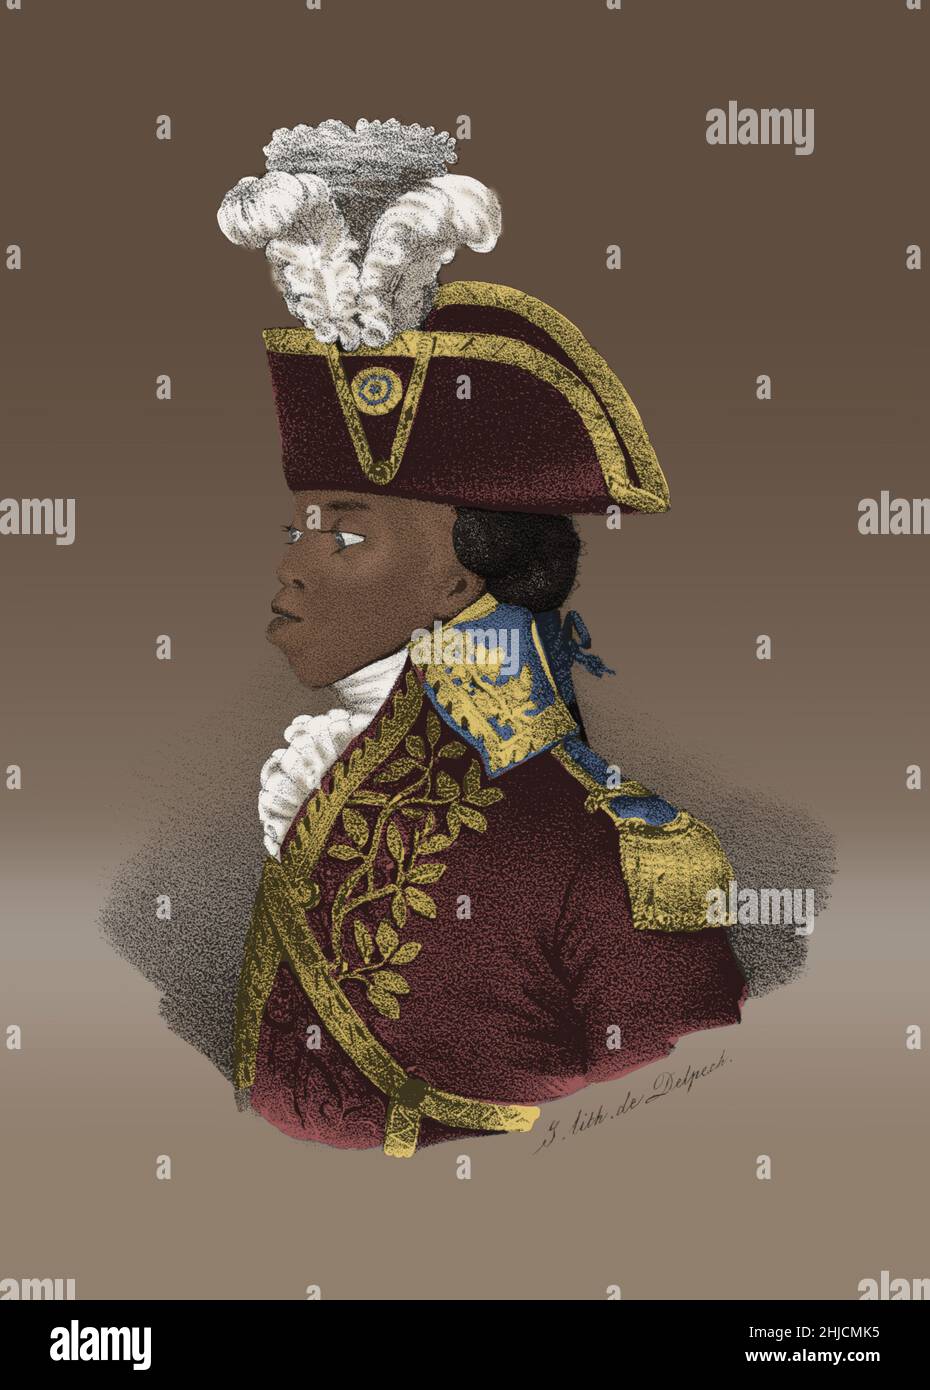 Toussaint l'ouverture (20 mai 1743 - 7 avril 1803) était un général haïtien qui a transformé une insurrection d'esclaves en un mouvement, la Révolution haïtienne. En 1800, Saint-Domingue, la colonie d'esclaves française la plus prospère de l'époque, était devenue la première société coloniale libre à avoir rejeté la race comme base du classement social. L'ouverture a créé une colonie autonome de facto et la constitution l'a proclamé gouverneur pour la vie. En 1802, il a été forcé de démissionner par les forces envoyées par Napoléon pour rétablir l'autorité française dans l'ancienne colonie. Il est déporté en France, où il est mort en 1803. Pas d'artiste cr Banque D'Images